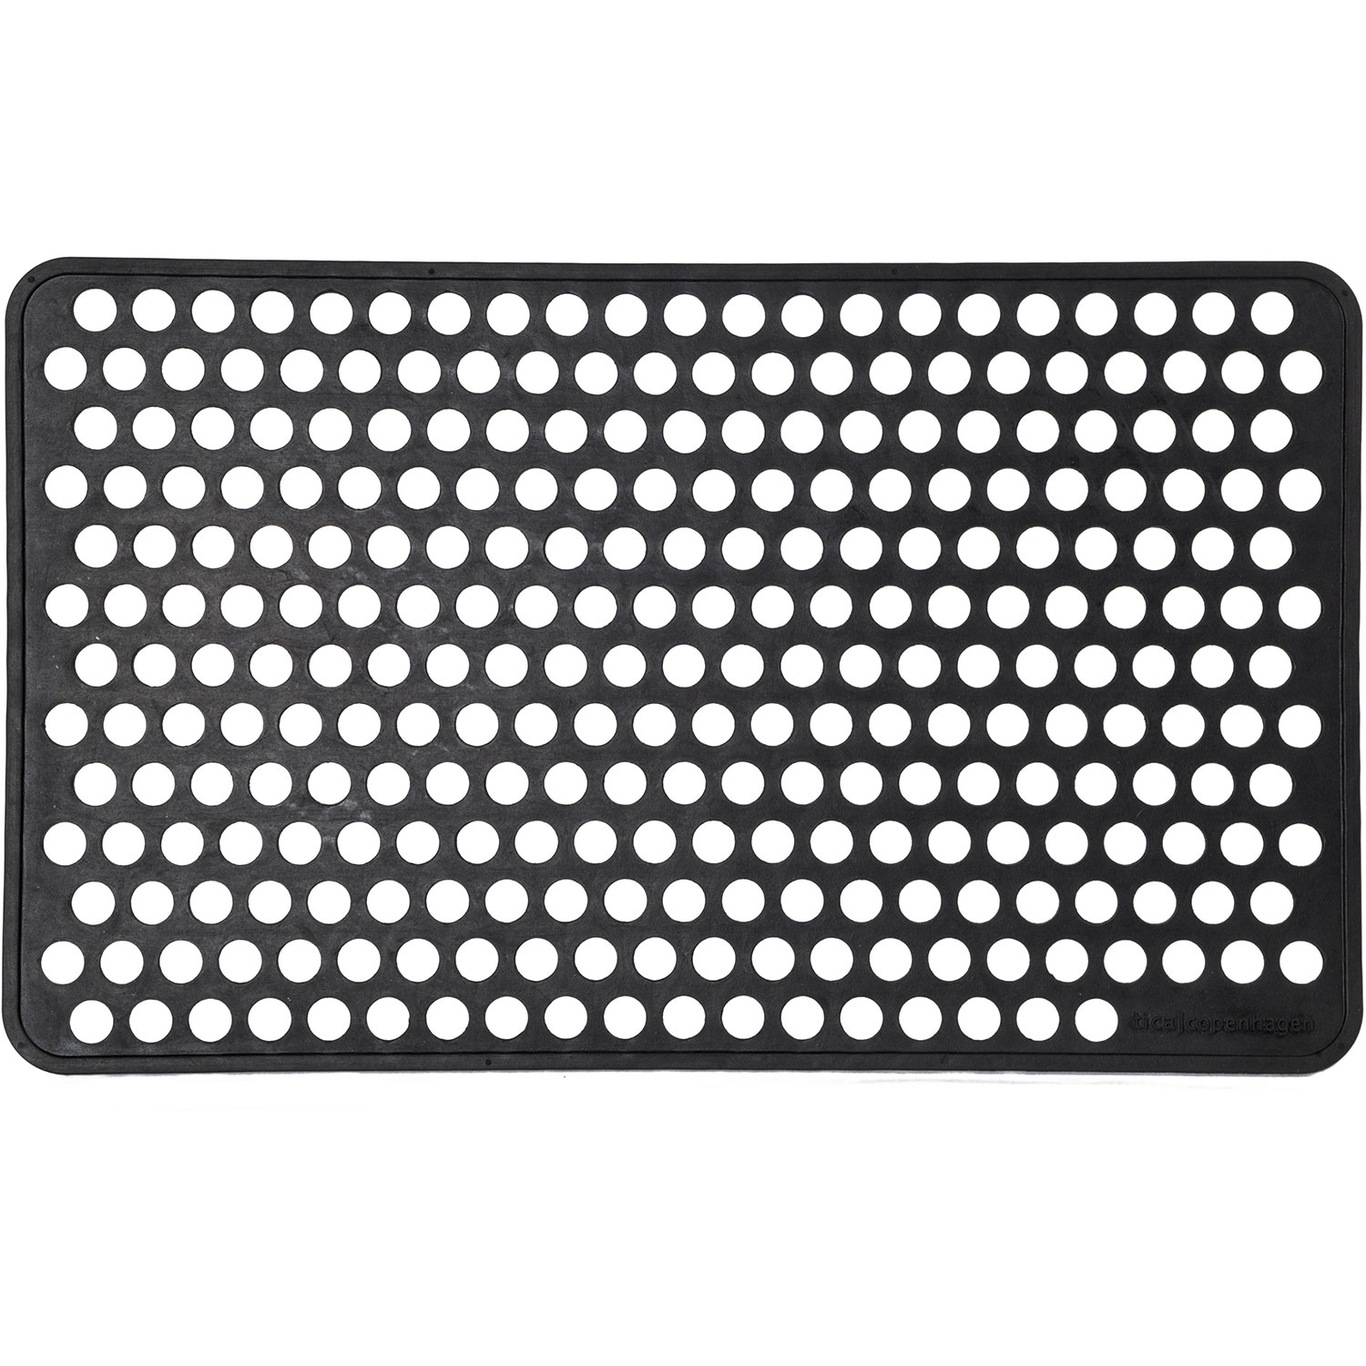 Dot Doormat 45x75 cm, Black